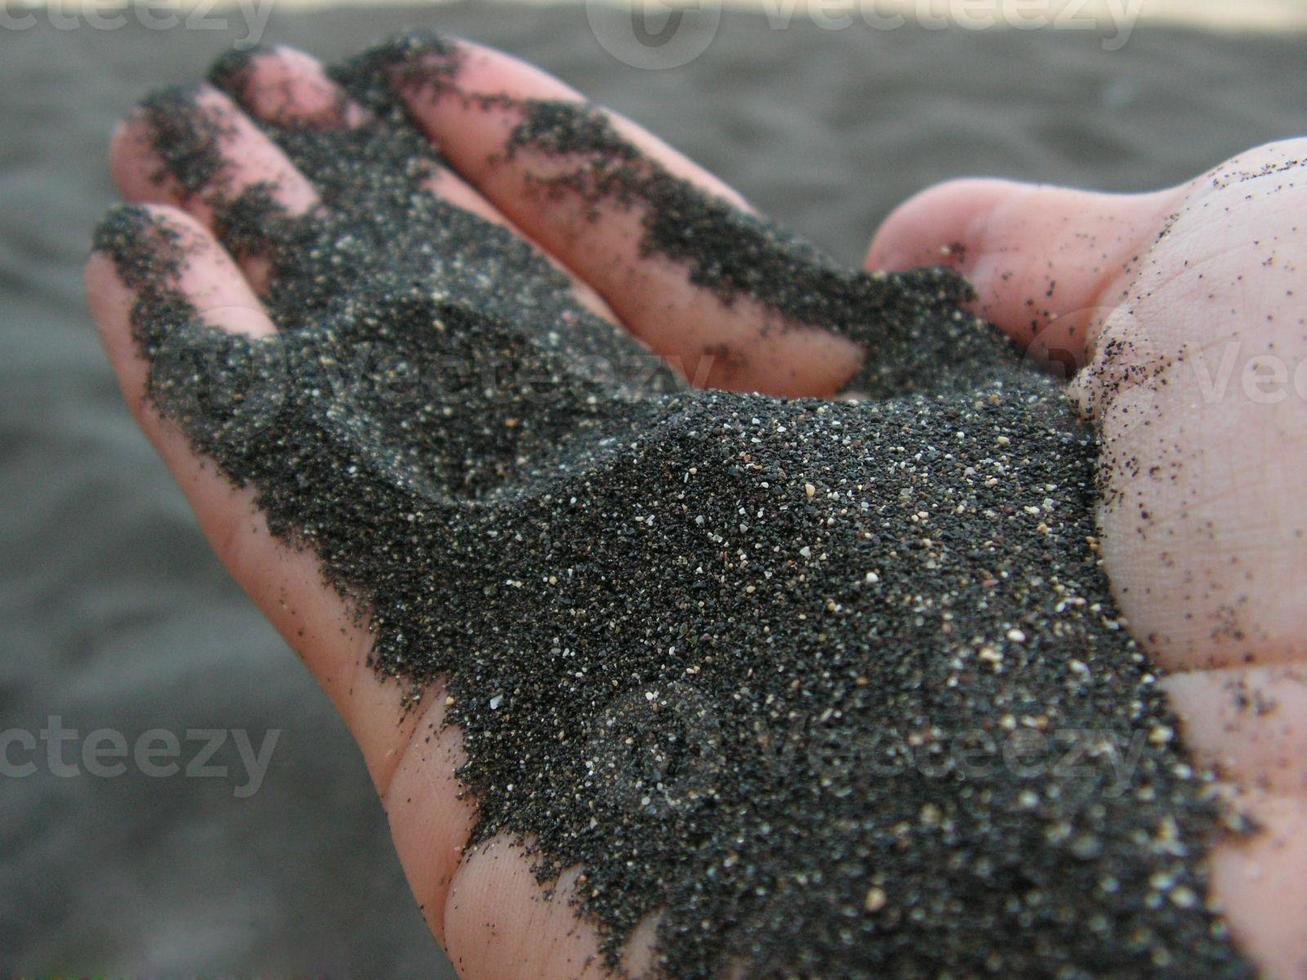 zwart zand op een hand foto